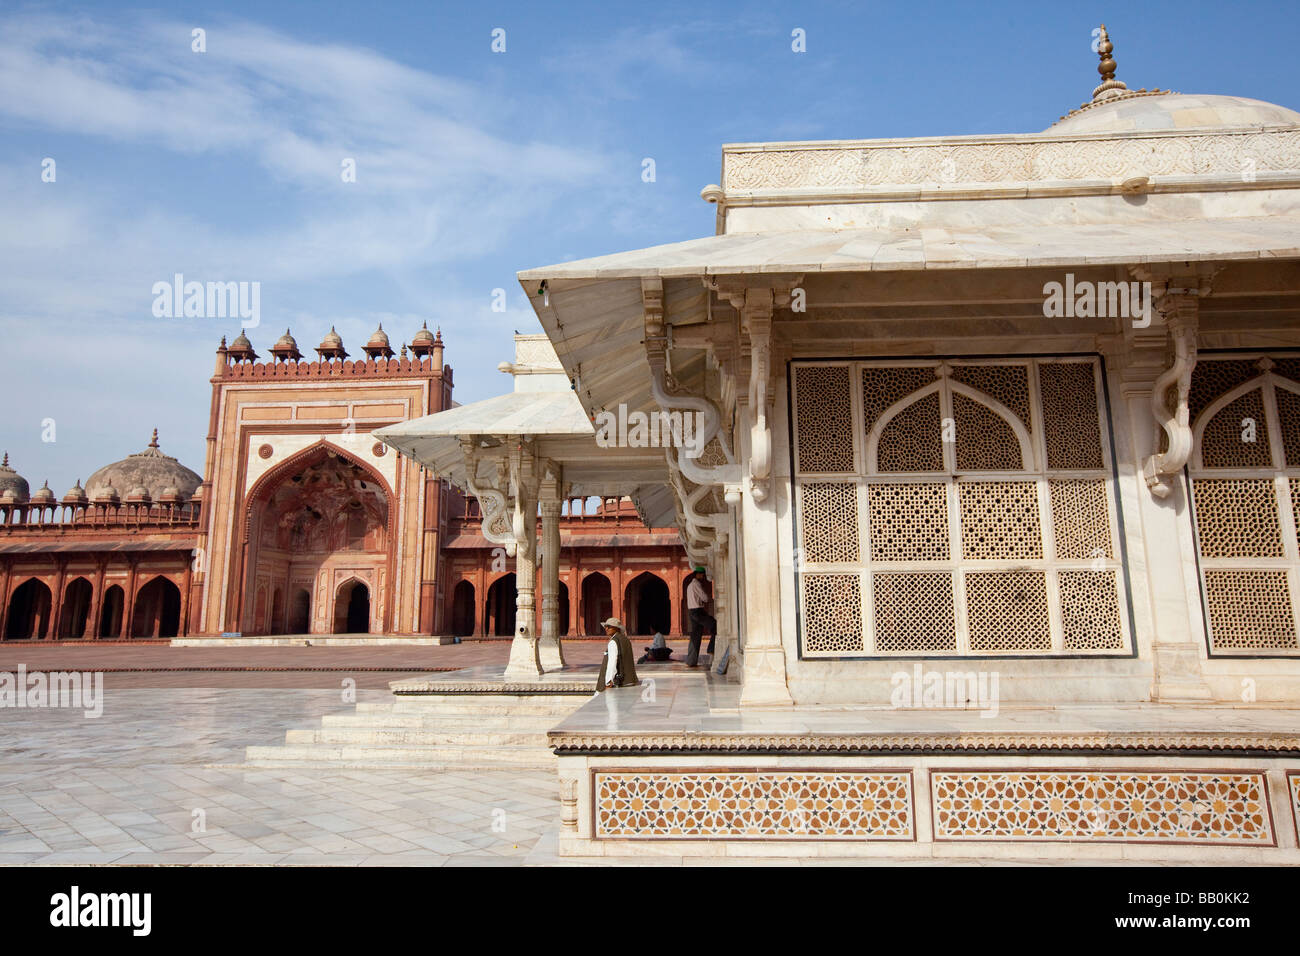 Le cheikh Salim Chishti tombe à l'intérieur de la Jama Masjid de Fatehpur Sikri Inde Banque D'Images